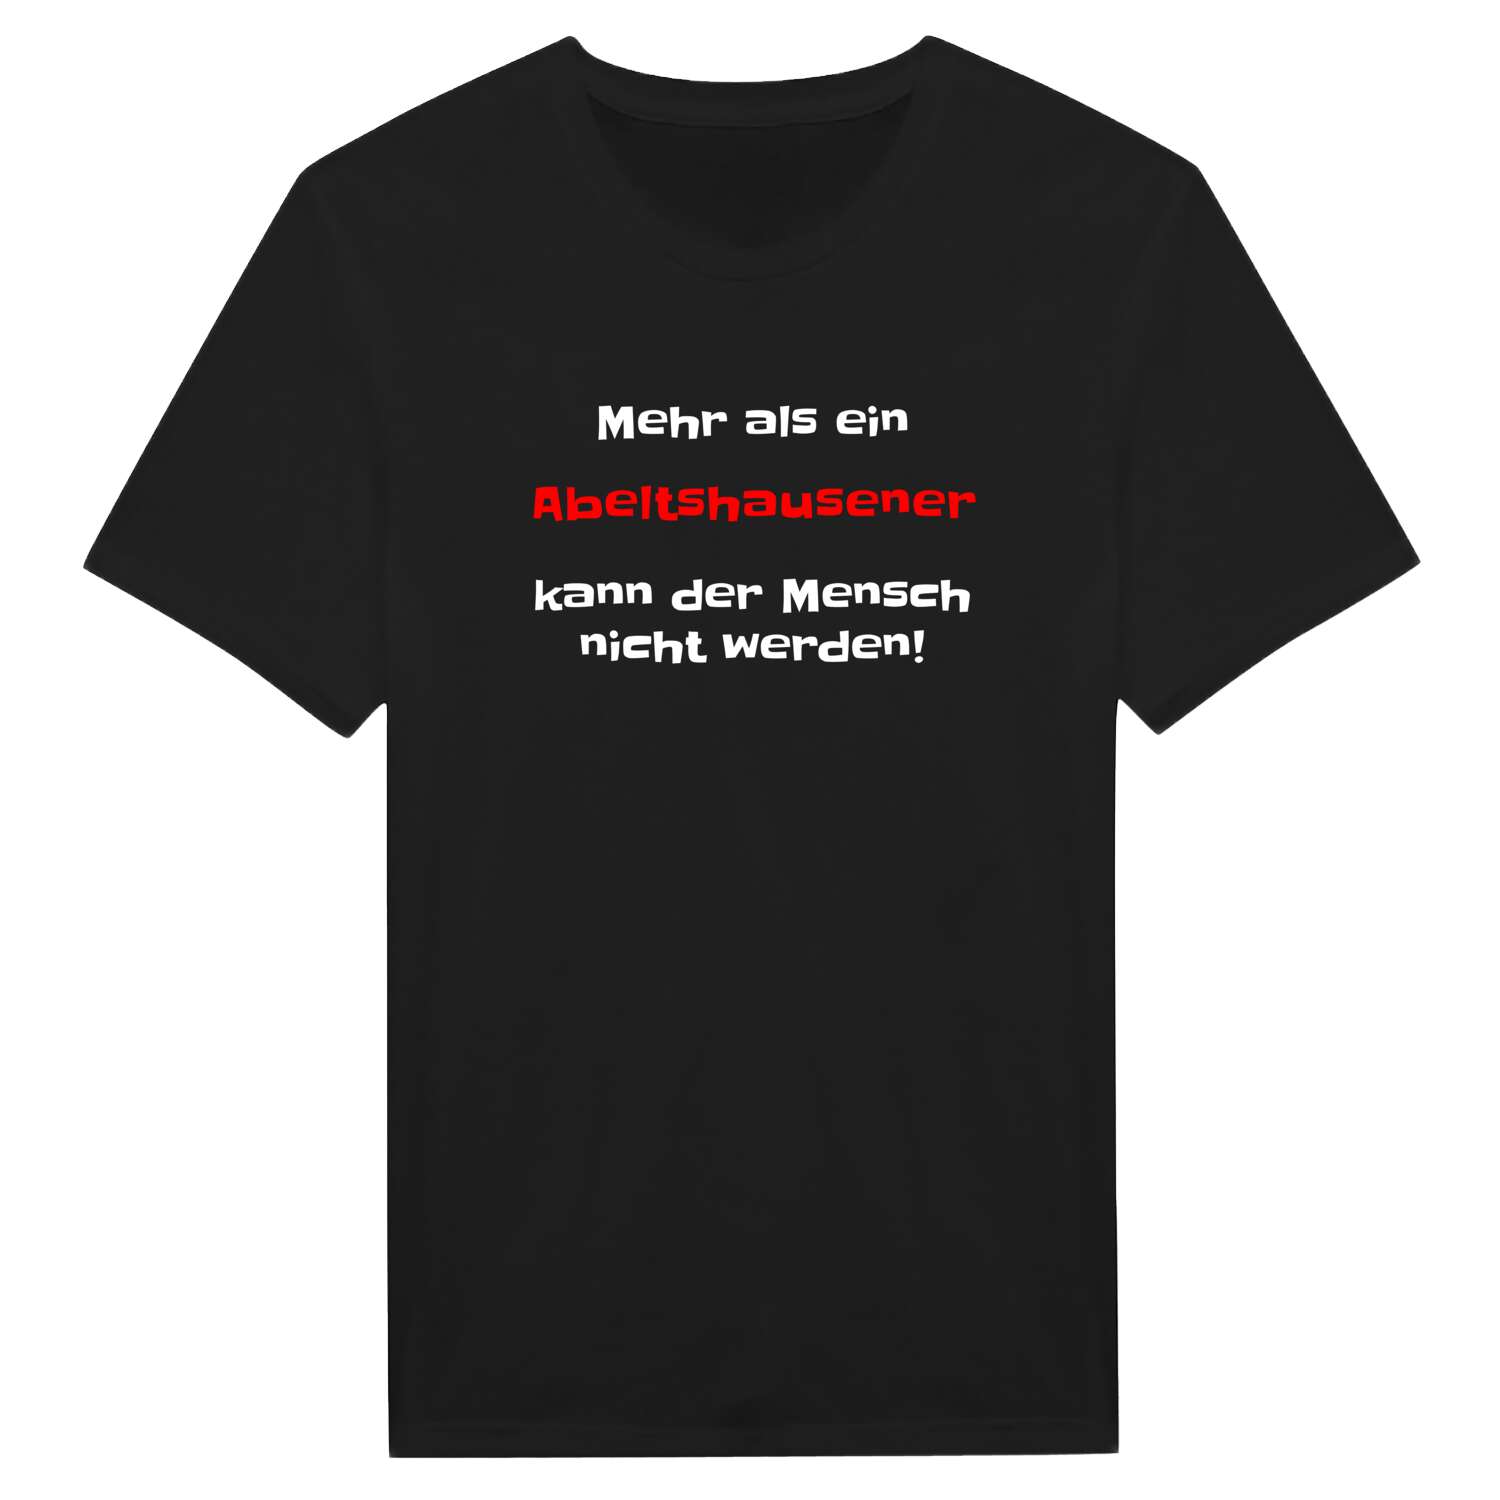 Abeltshausen T-Shirt »Mehr als ein«